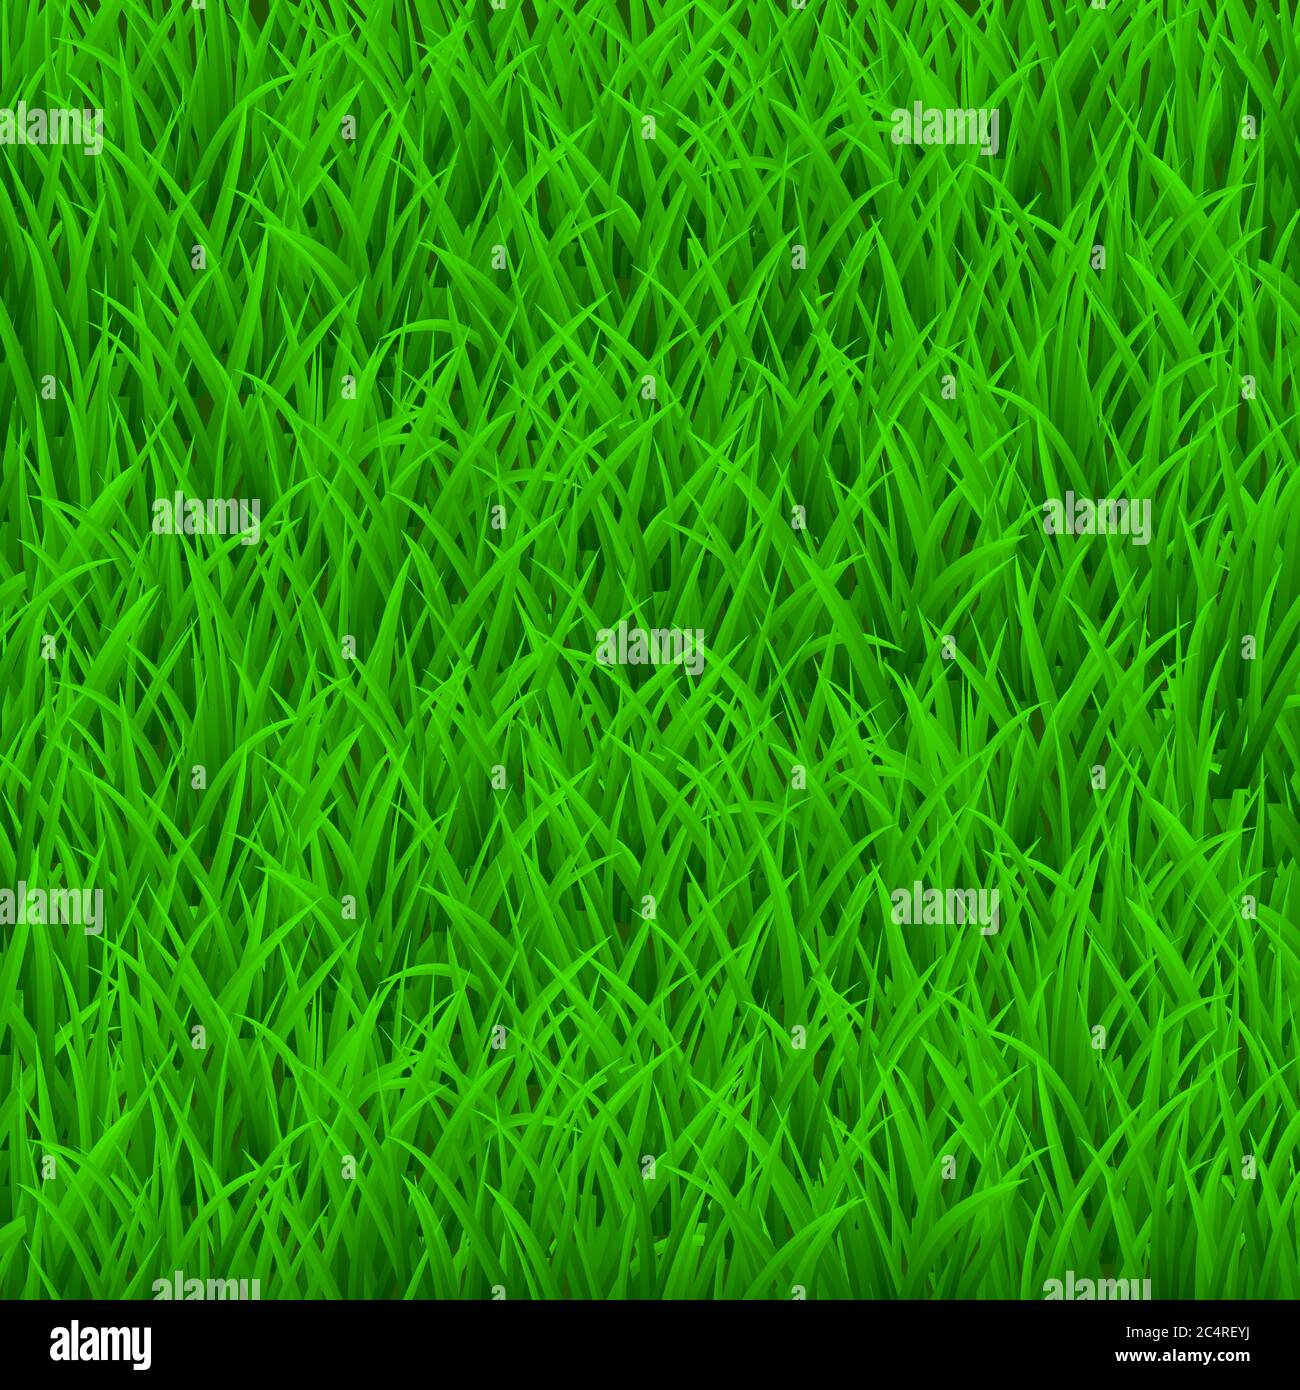 Hintergrund von frischem grünen Gras. Draufsicht. Stock Vektor